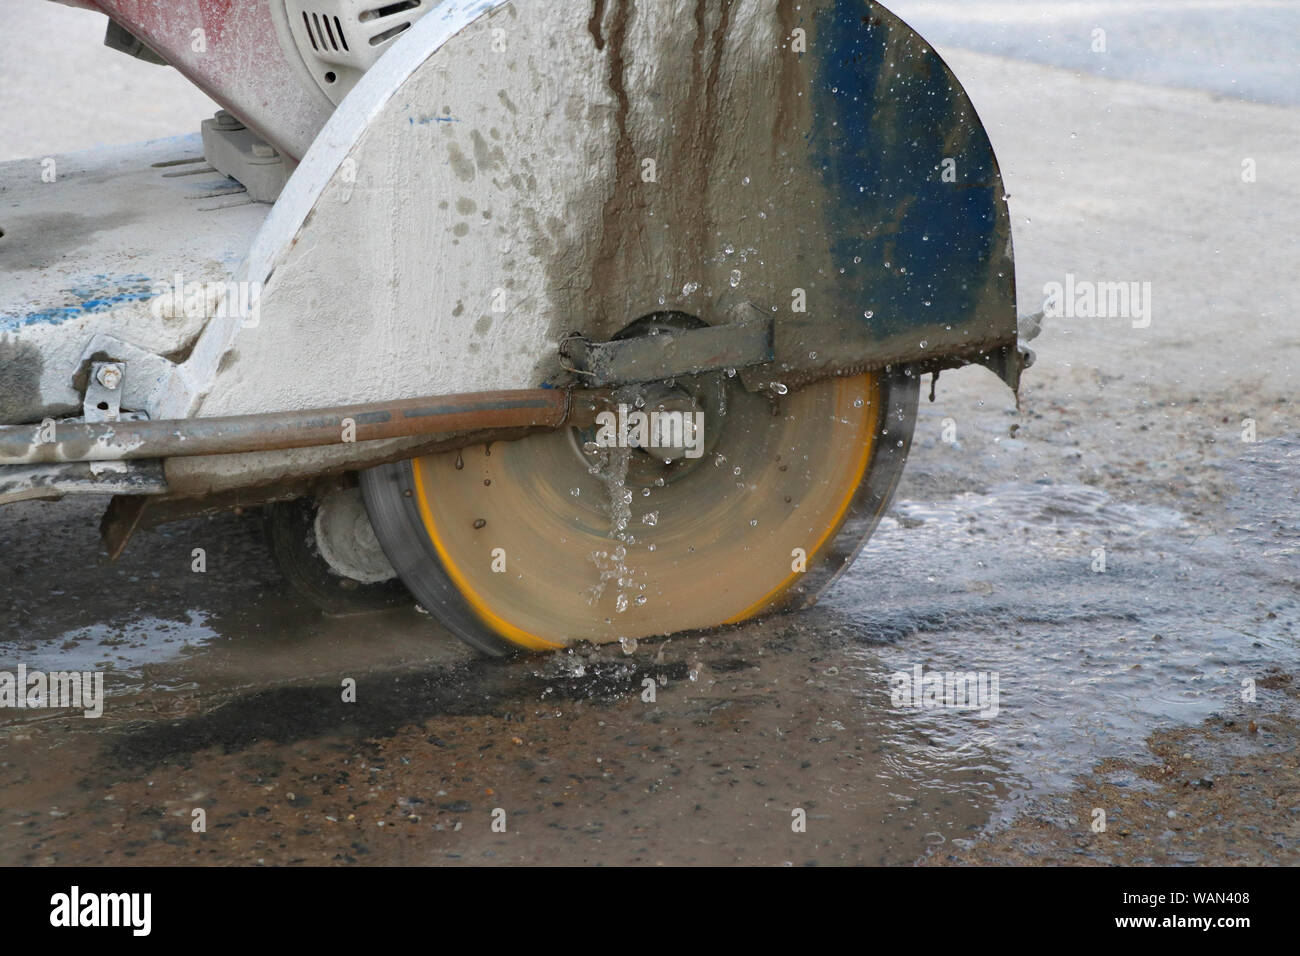 Konkrete Schneidemaschine Schneiden Beton Boden mit Wasser aus Gusseisen  Staub zu verringern Stockfotografie - Alamy